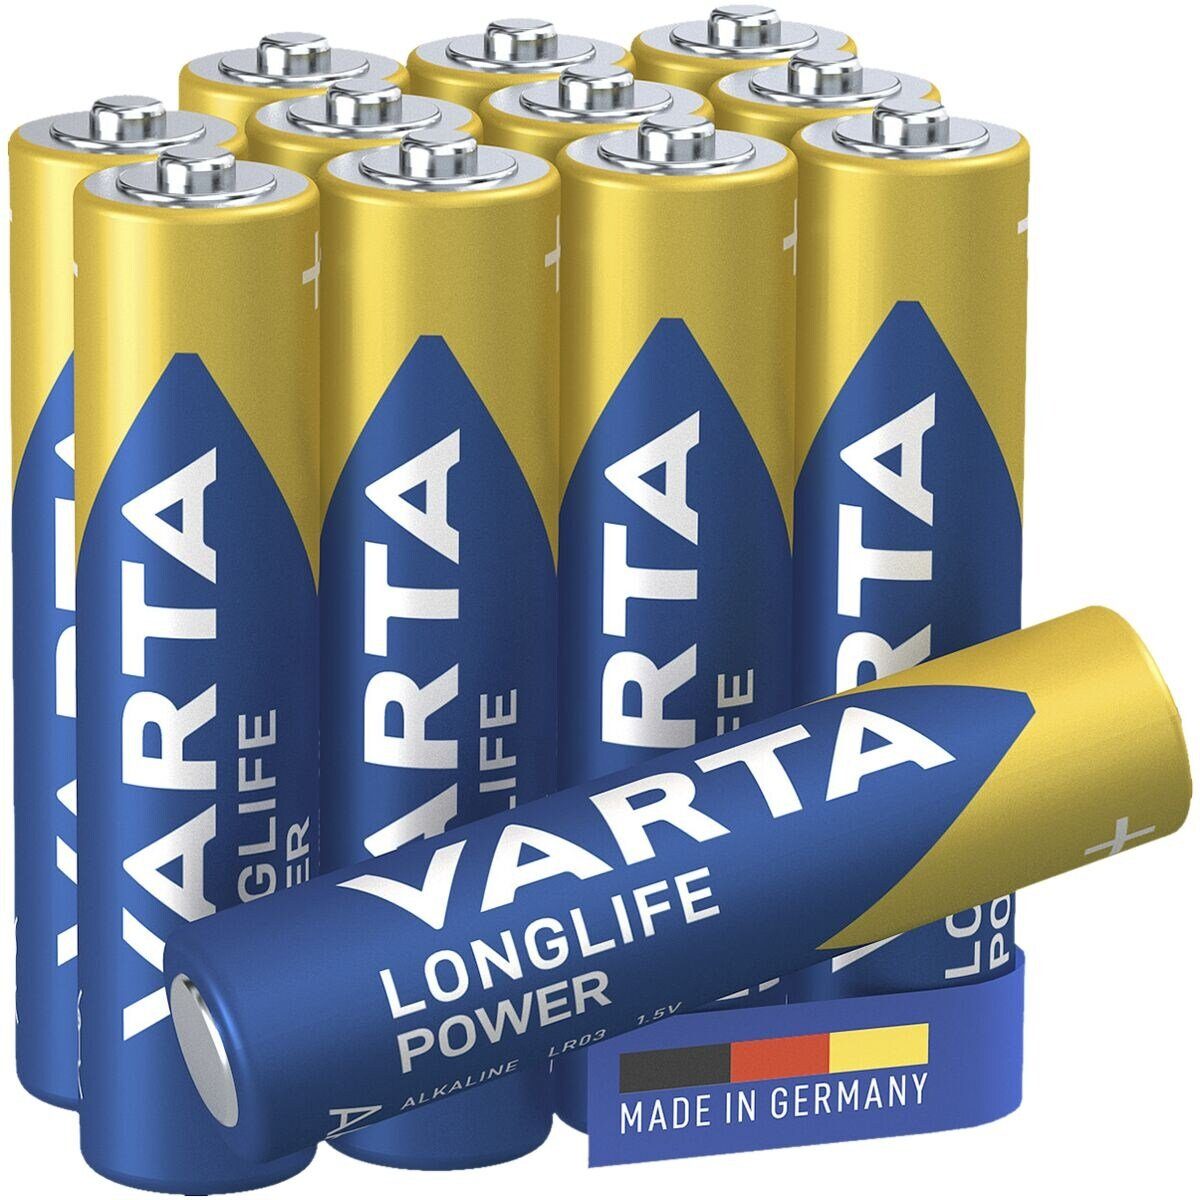 VARTA LONGLIFE Power Batterie, (1.5 V, 12 St), Micro / AAA / LR03, 1,5 V, Alkali-Mangan, mit langer Lebensdauer | Batterien